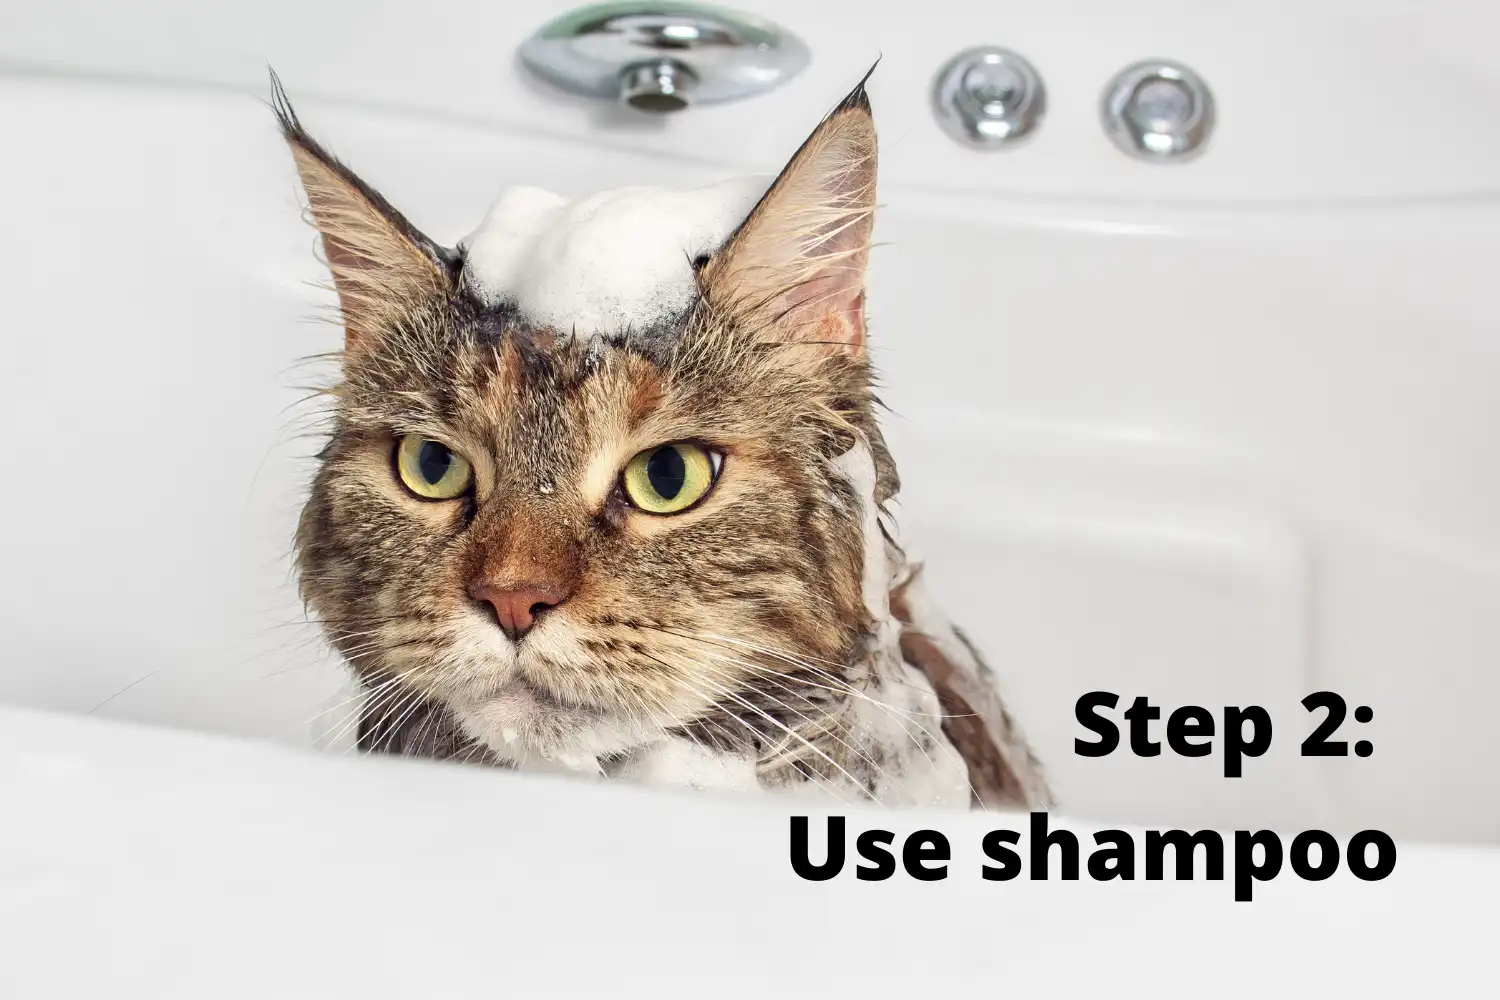 How to Bathe A Cat? - Step 2: Use shampoo